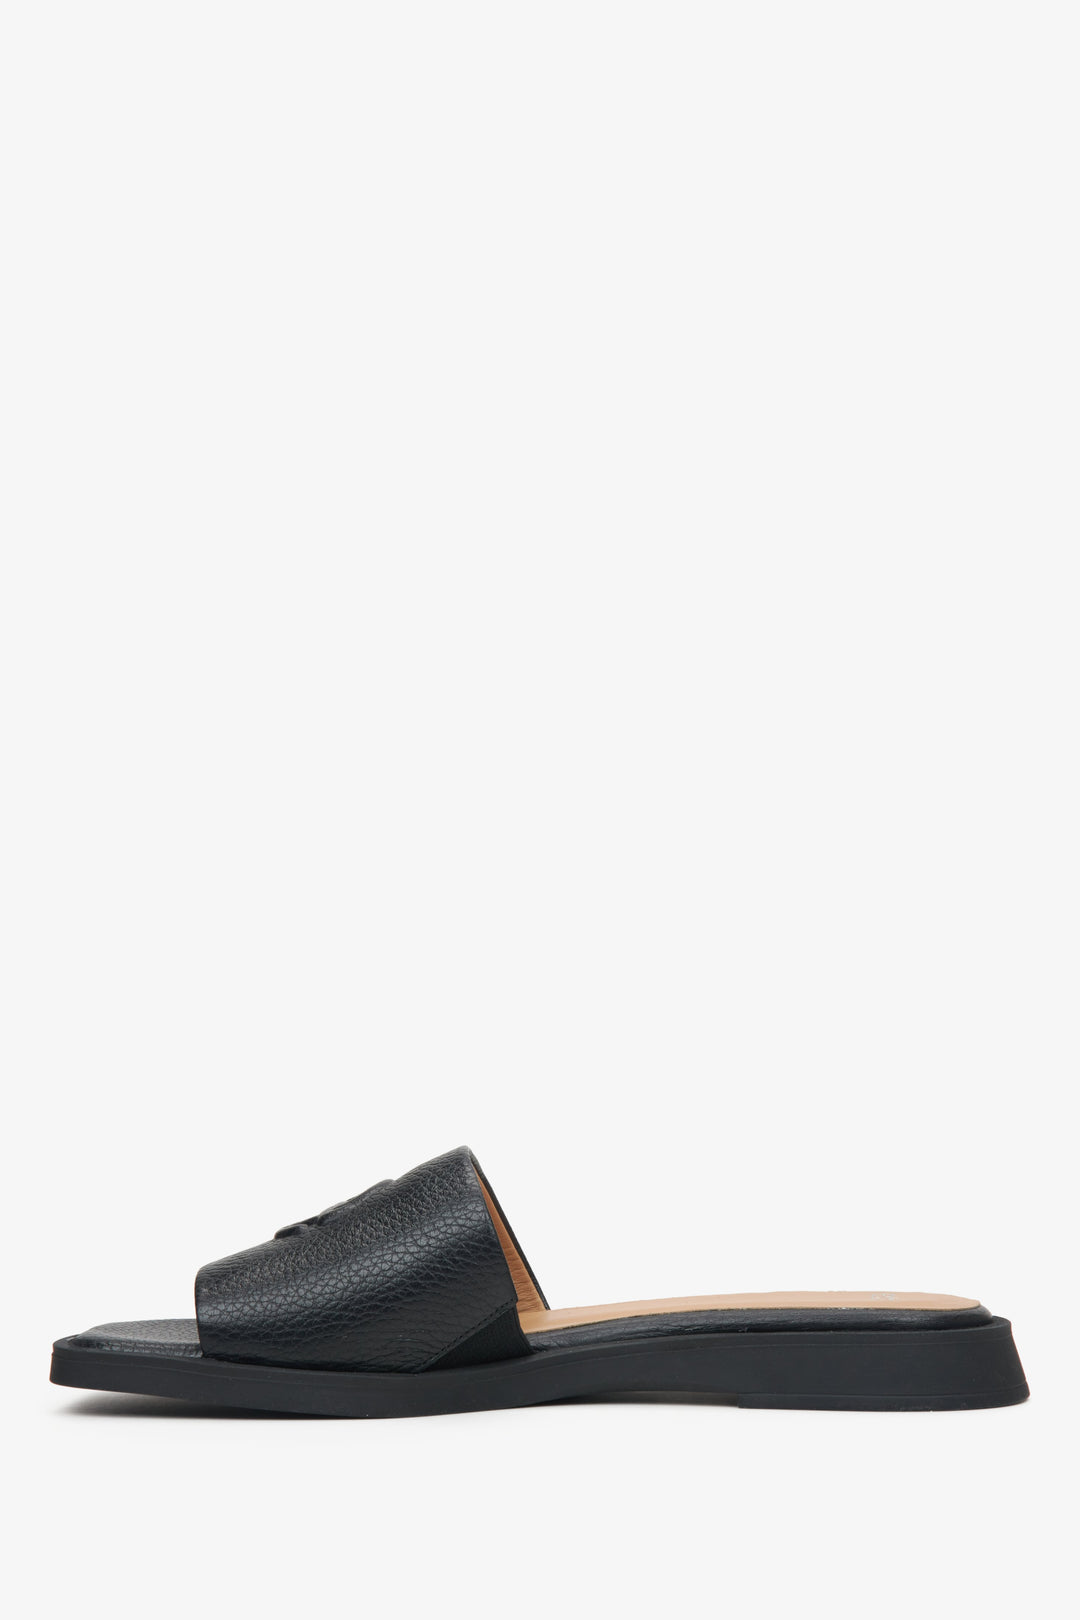 Women's black leather flat sandals by Estro - shoe profile.